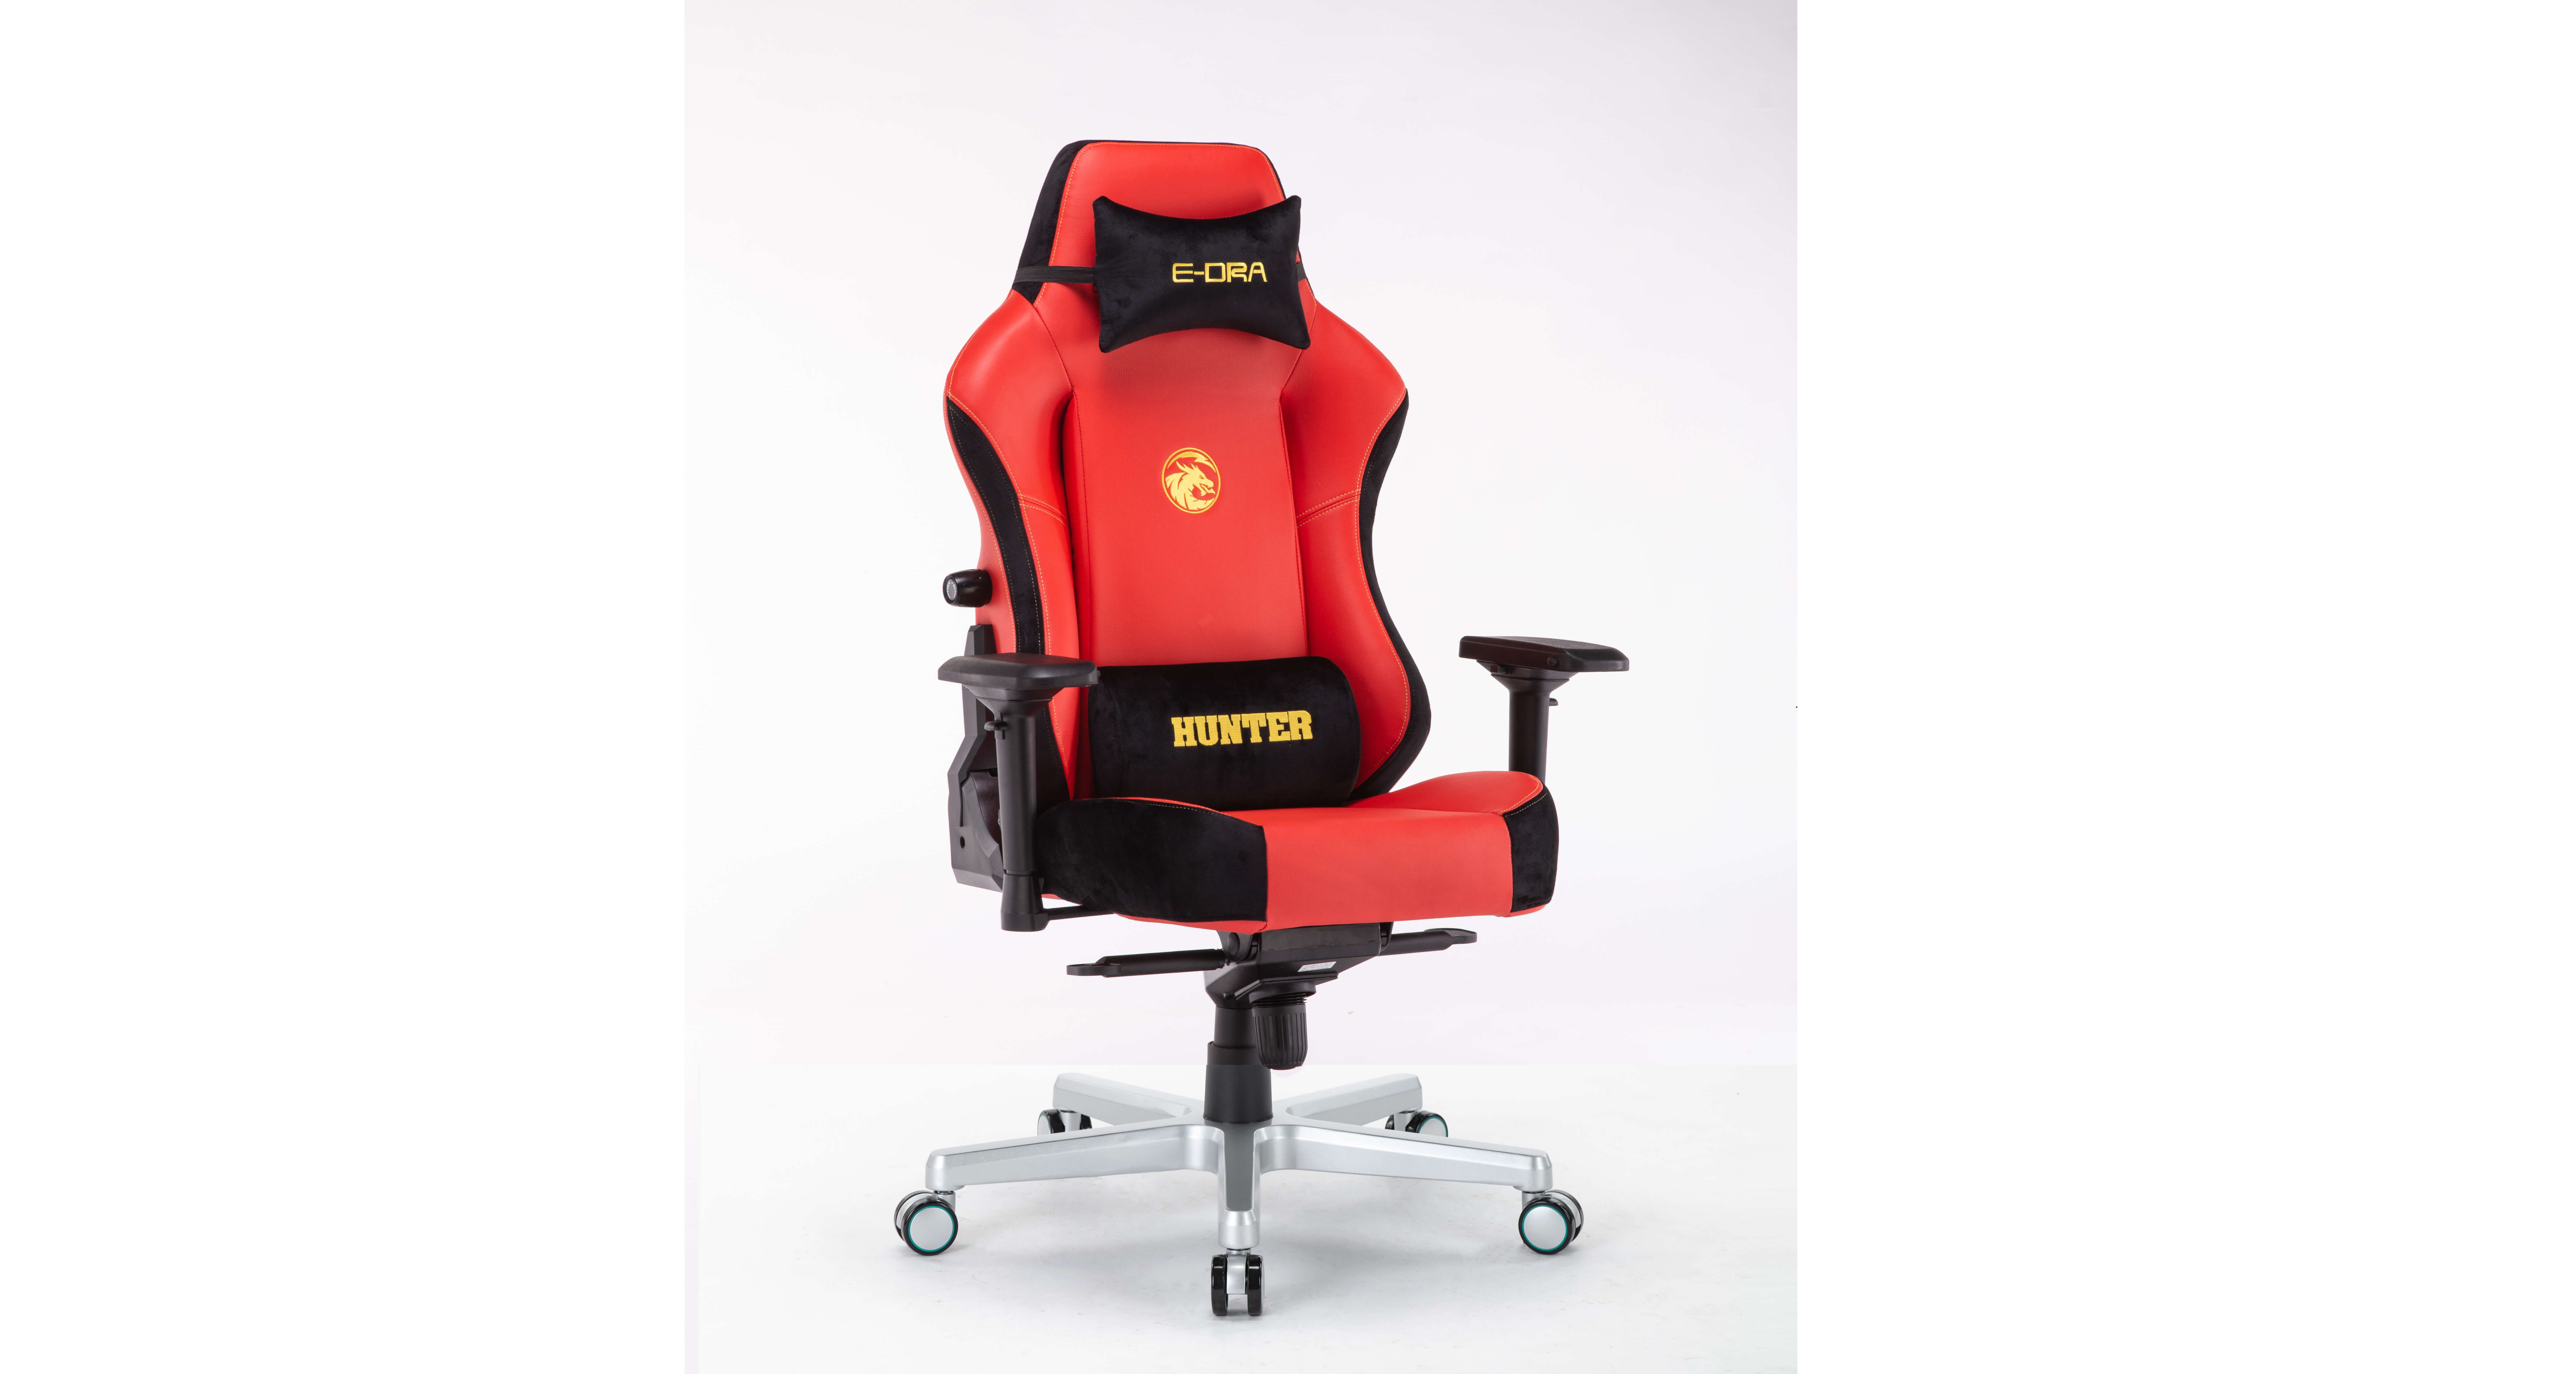 Ghế game E-Dra Hunter Gaming Chair - EGC 206 Red sử dụng chất liệu da PU cao cấp